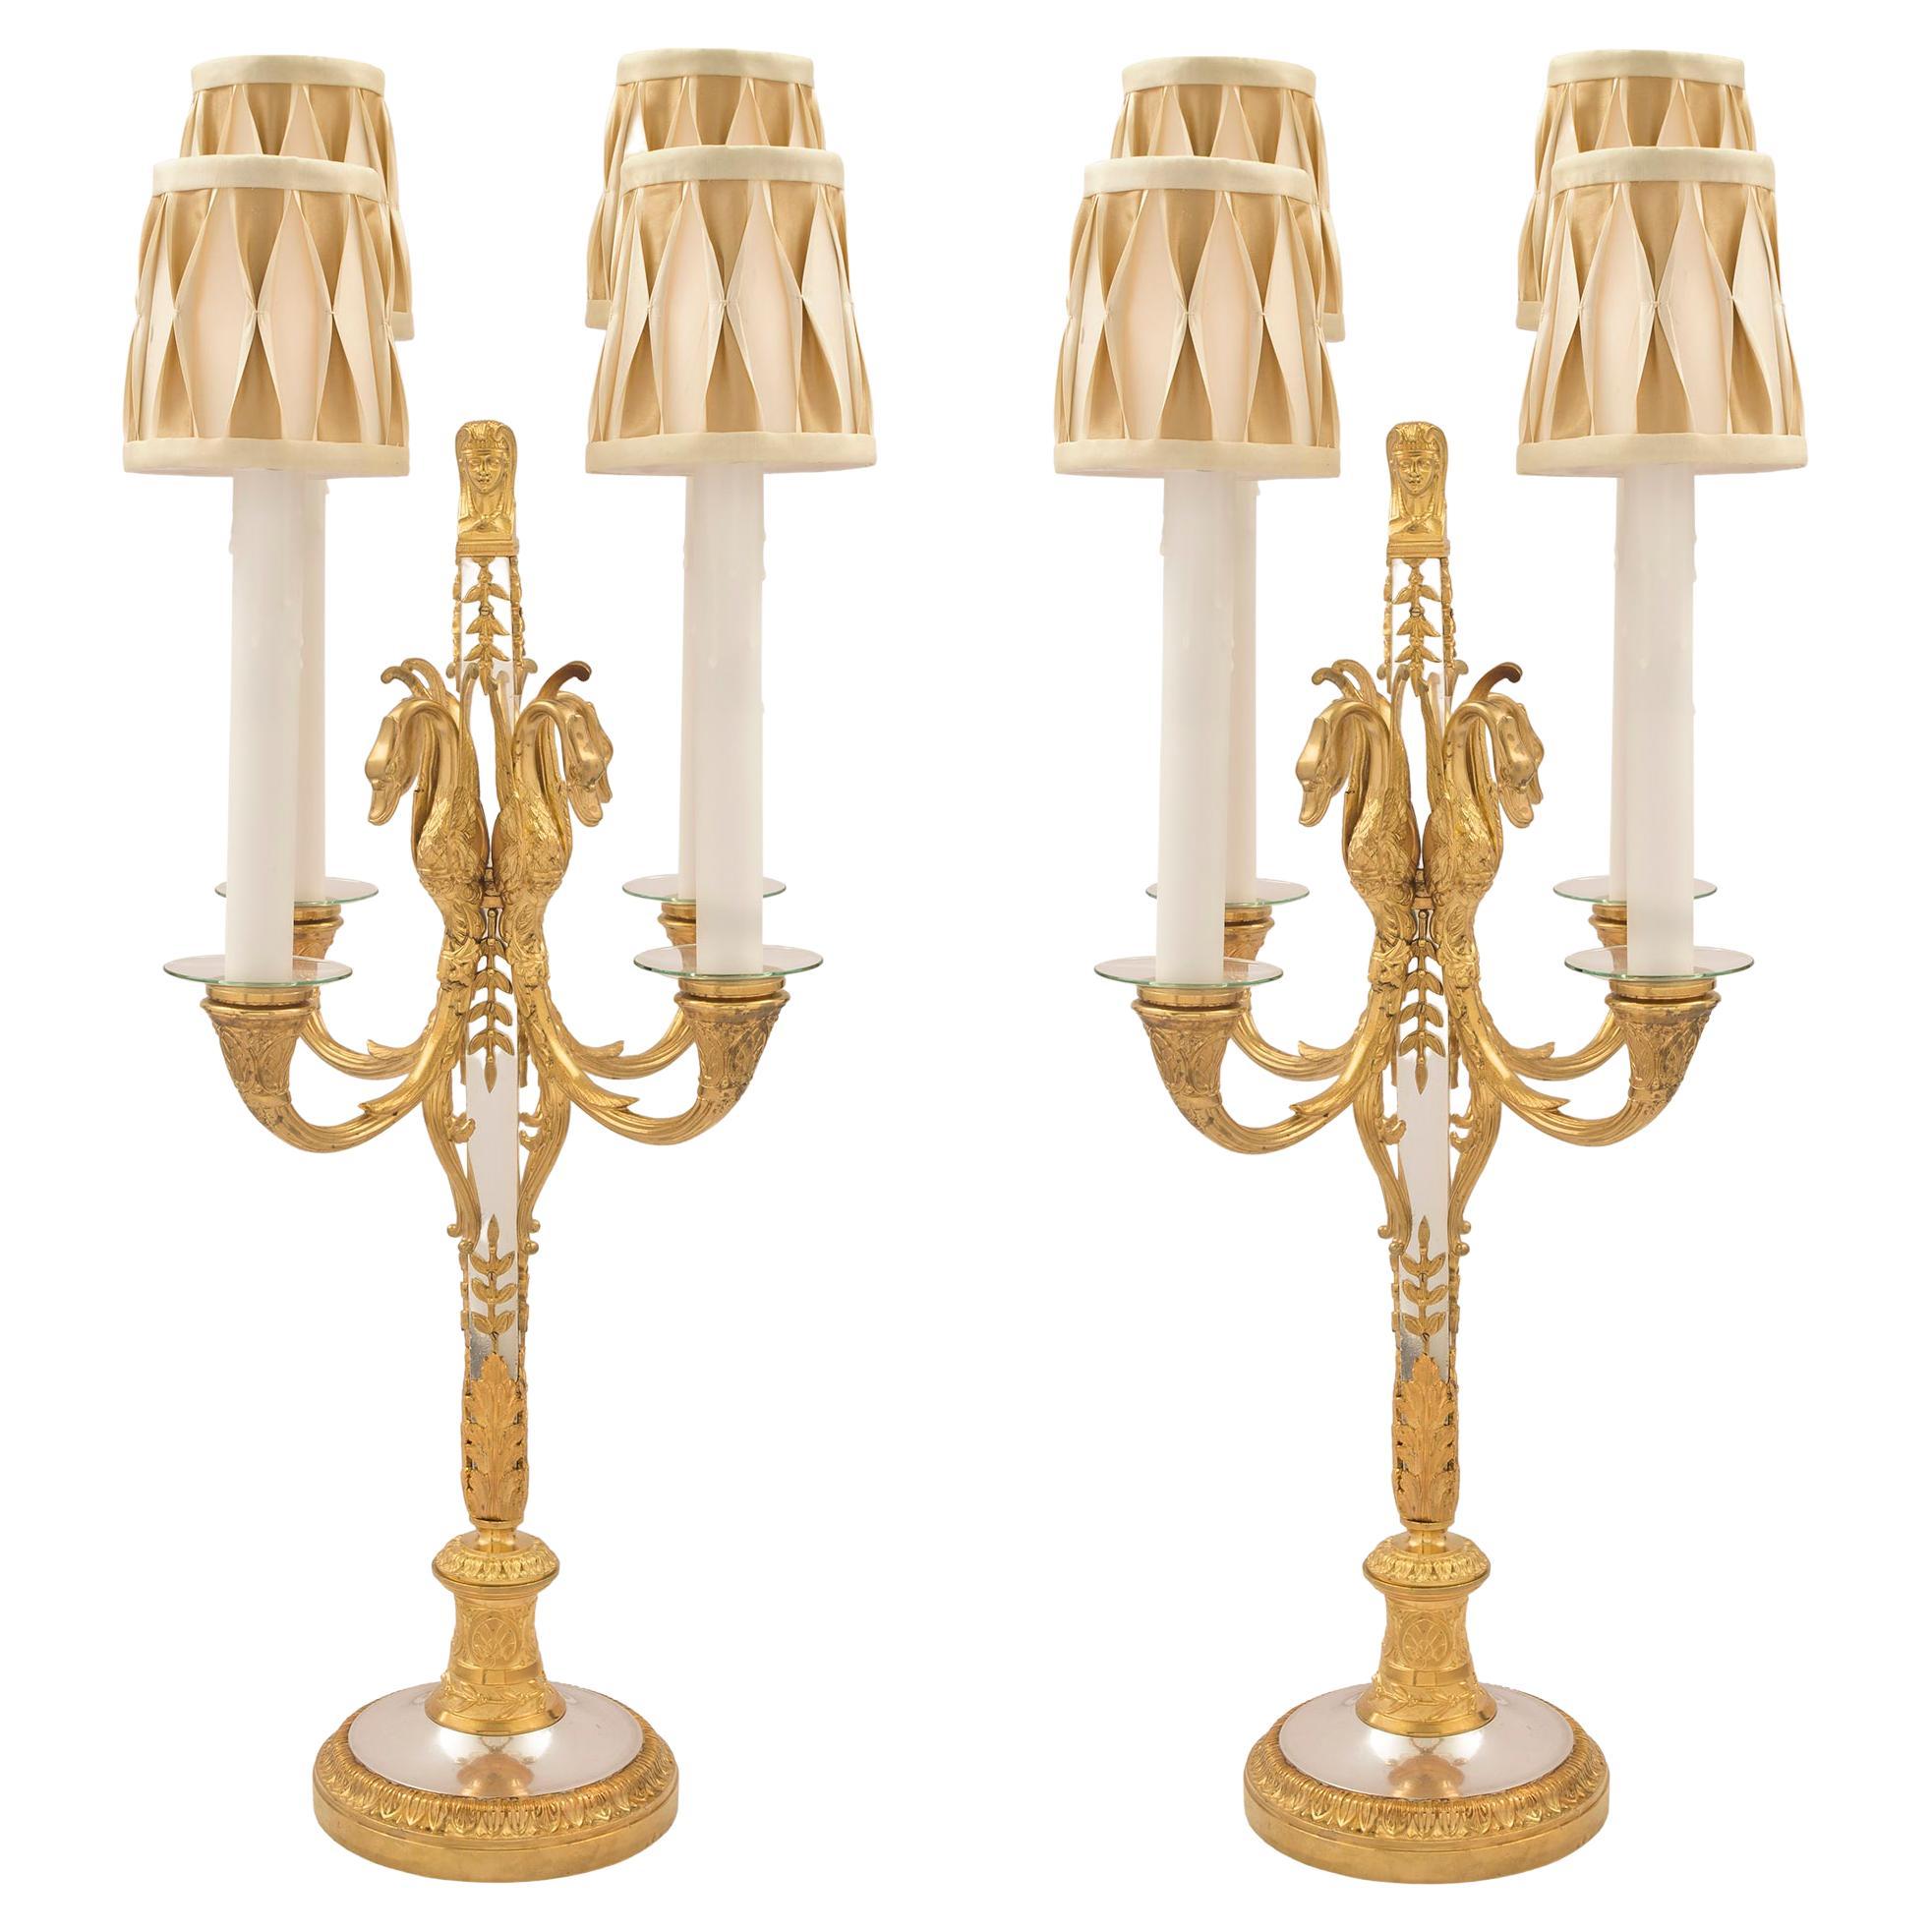 Paire de candélabres de style néo-classique français du milieu du XIXe siècle